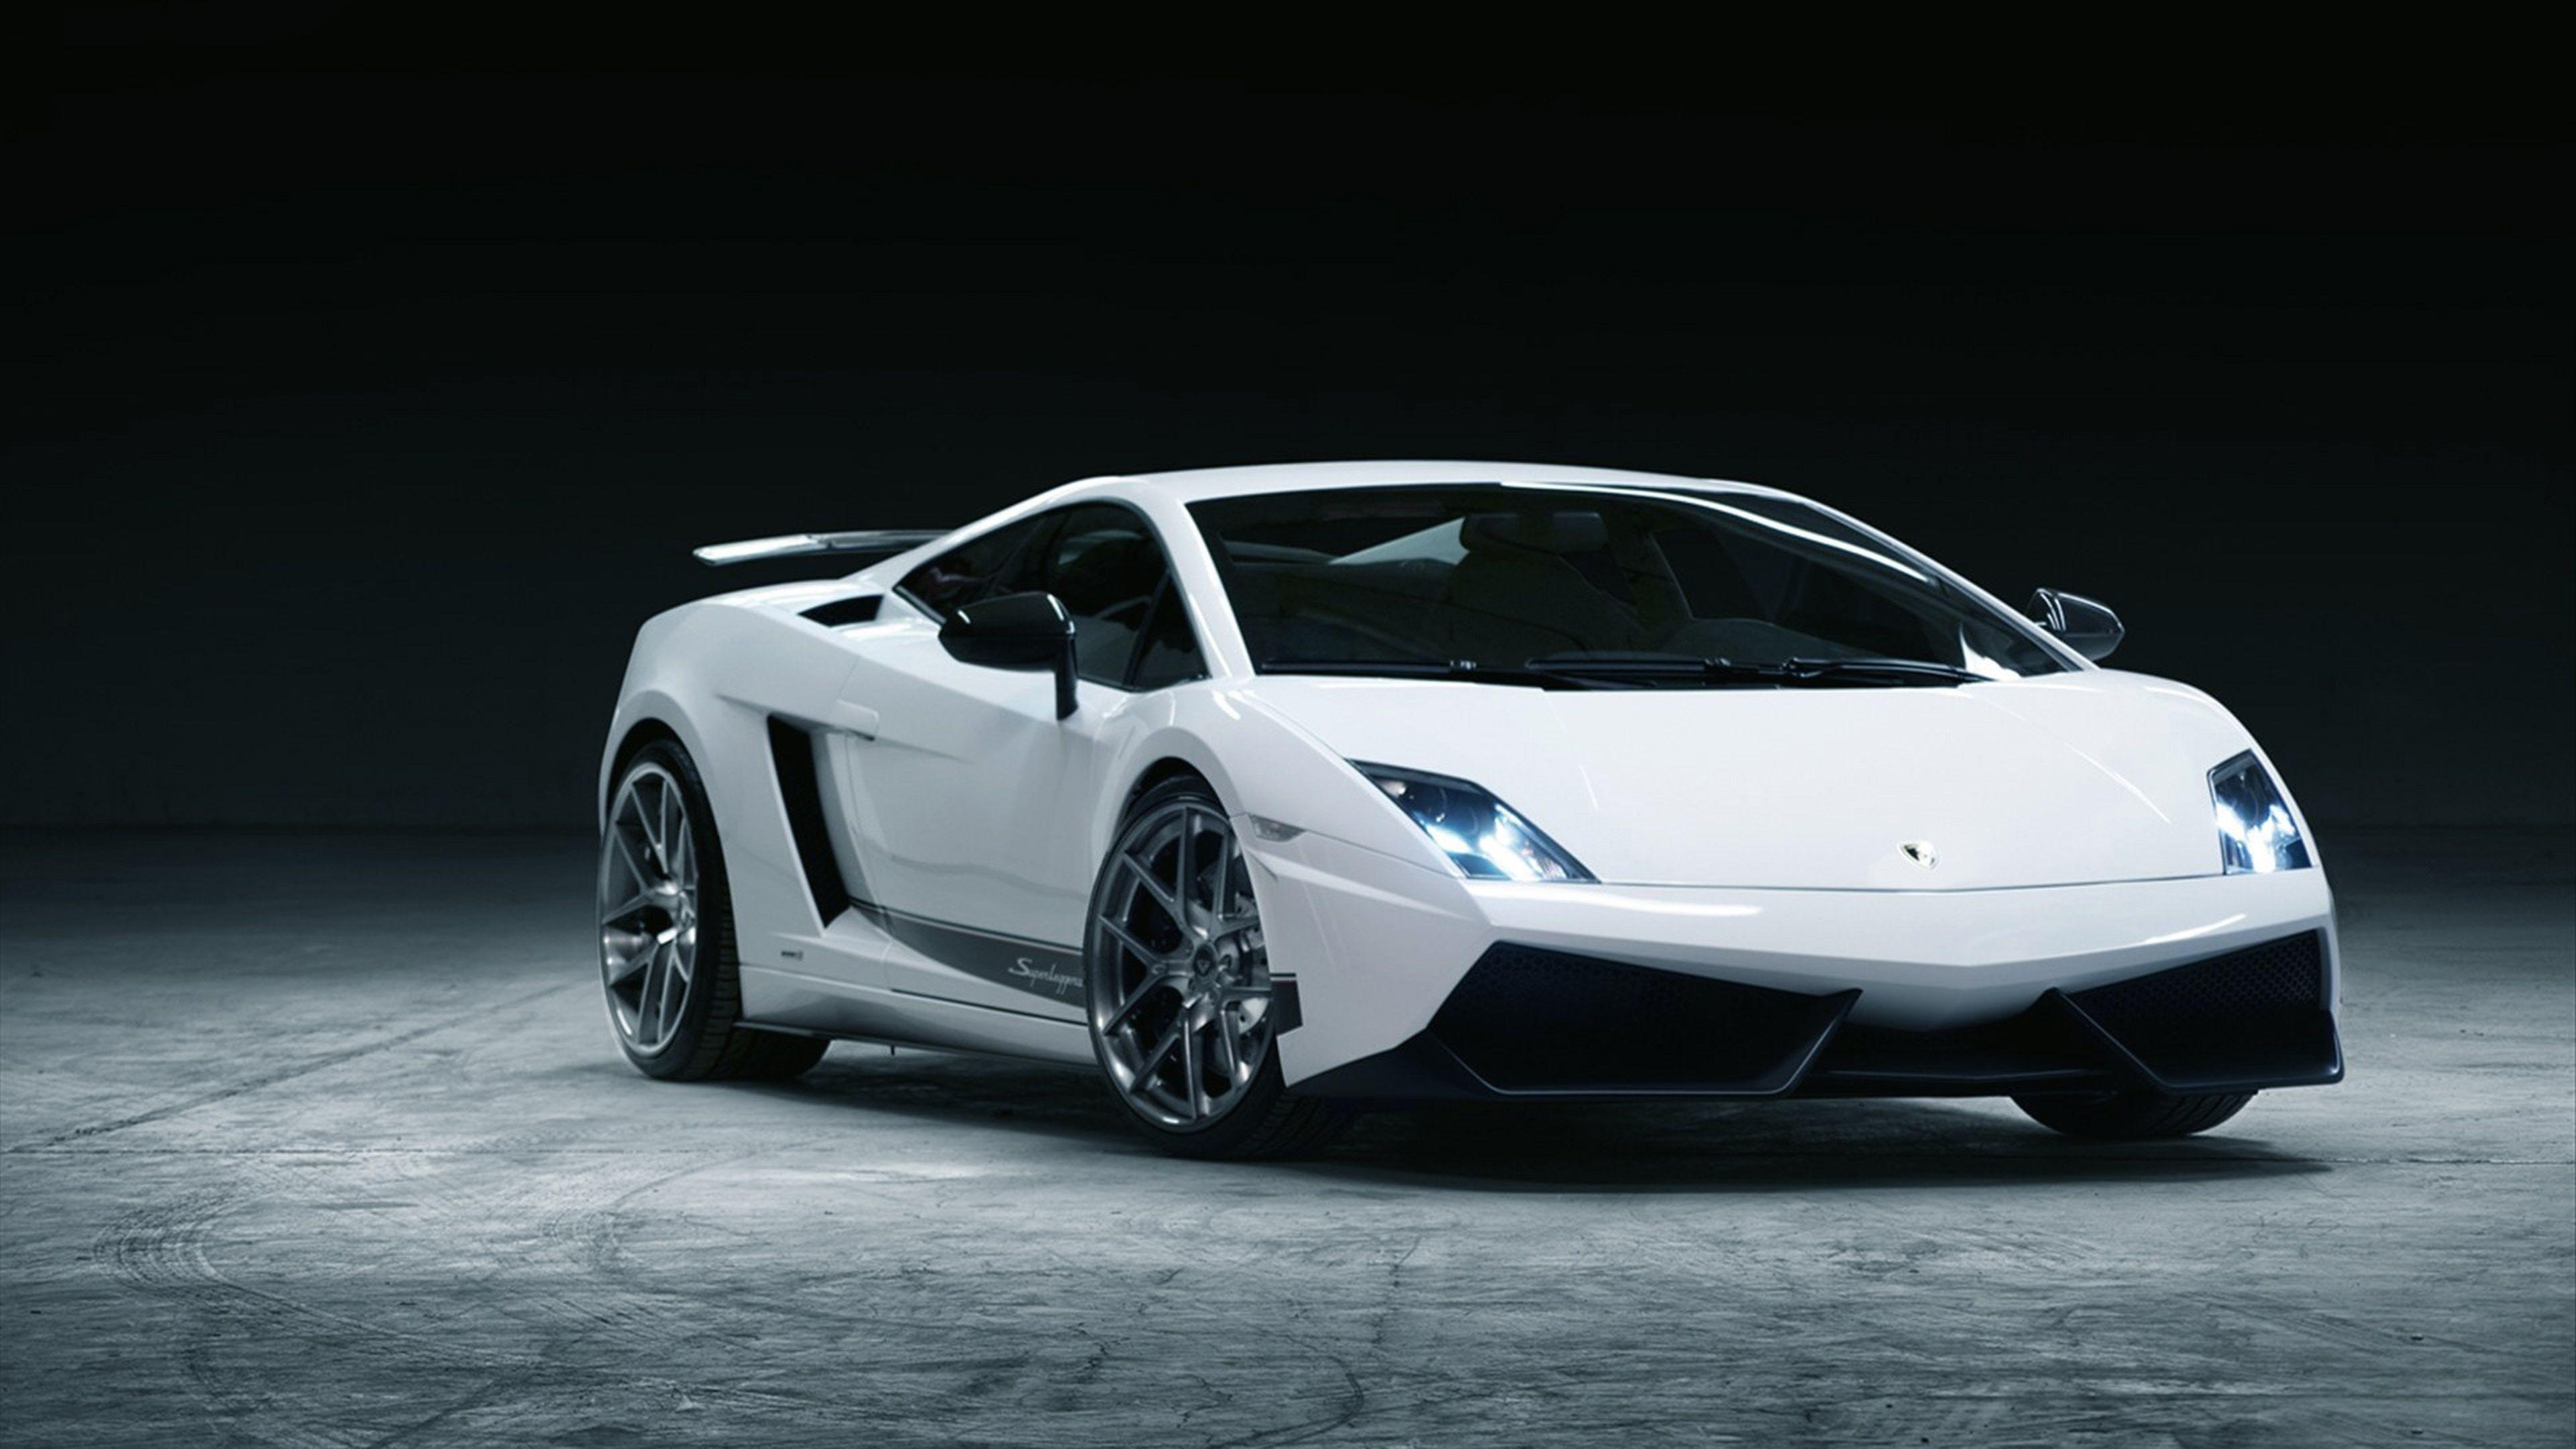 Lamborghini Veneno Ultra HD 4K Wallpaper. Cars